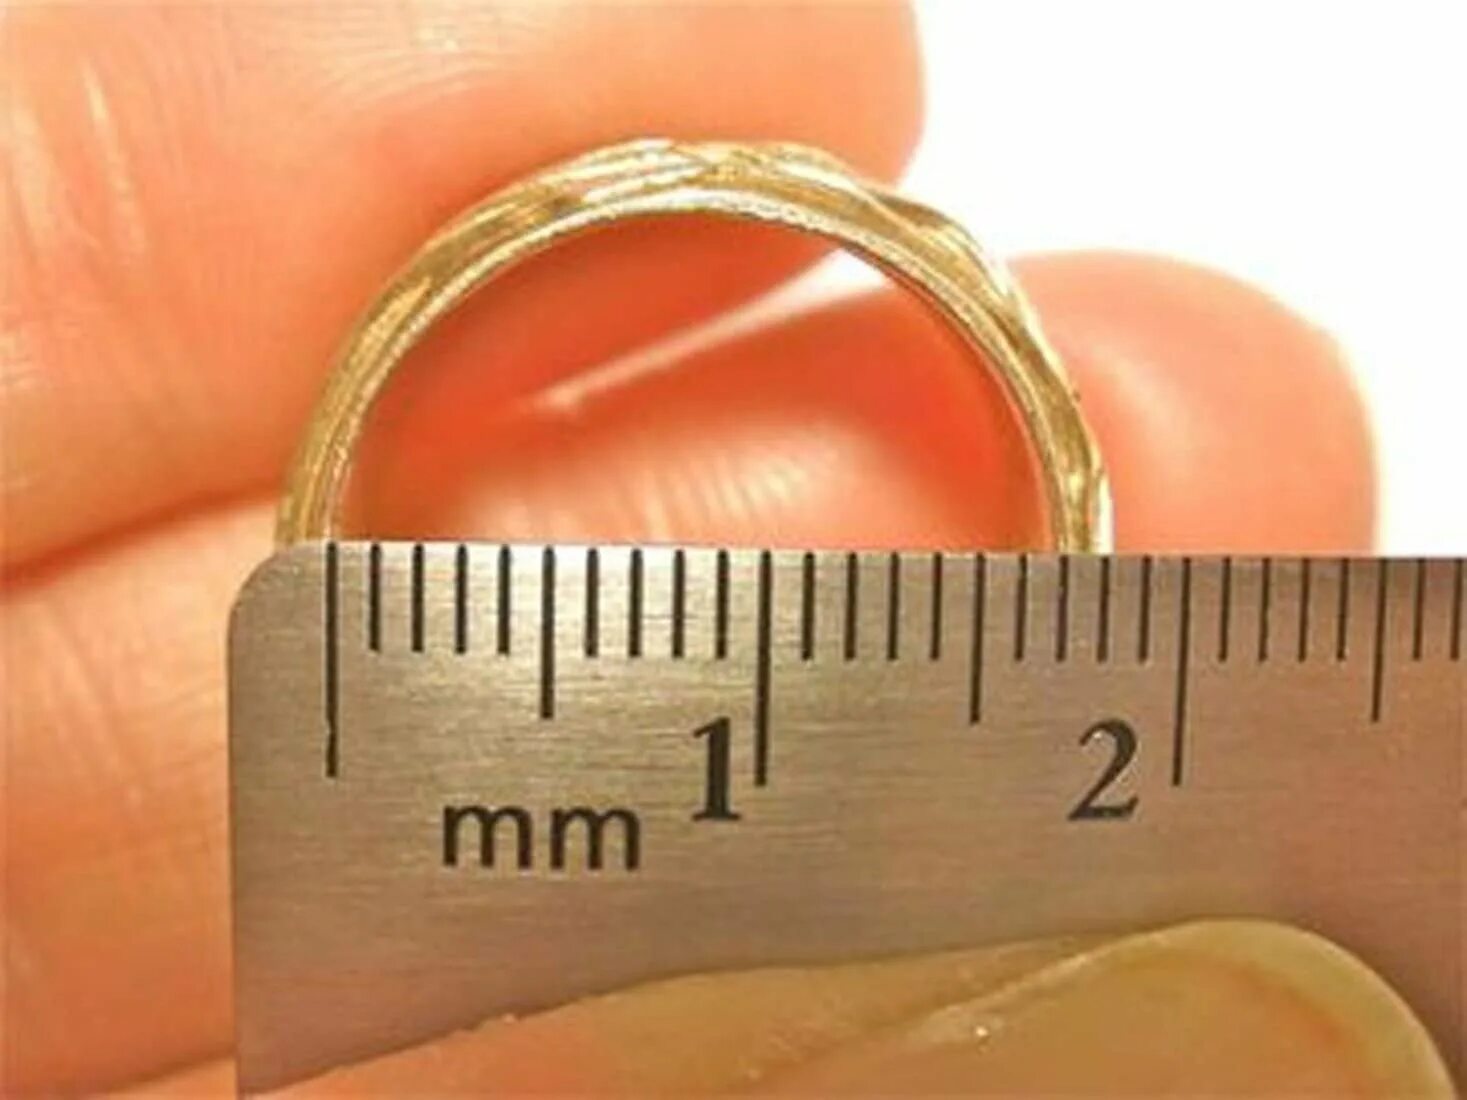 Сколько сантиметров пальцы. 16 Размер кольца. Диаметр кольца 18 мм. 20 Мм размер кольца. Диаметр кольца 3 см.